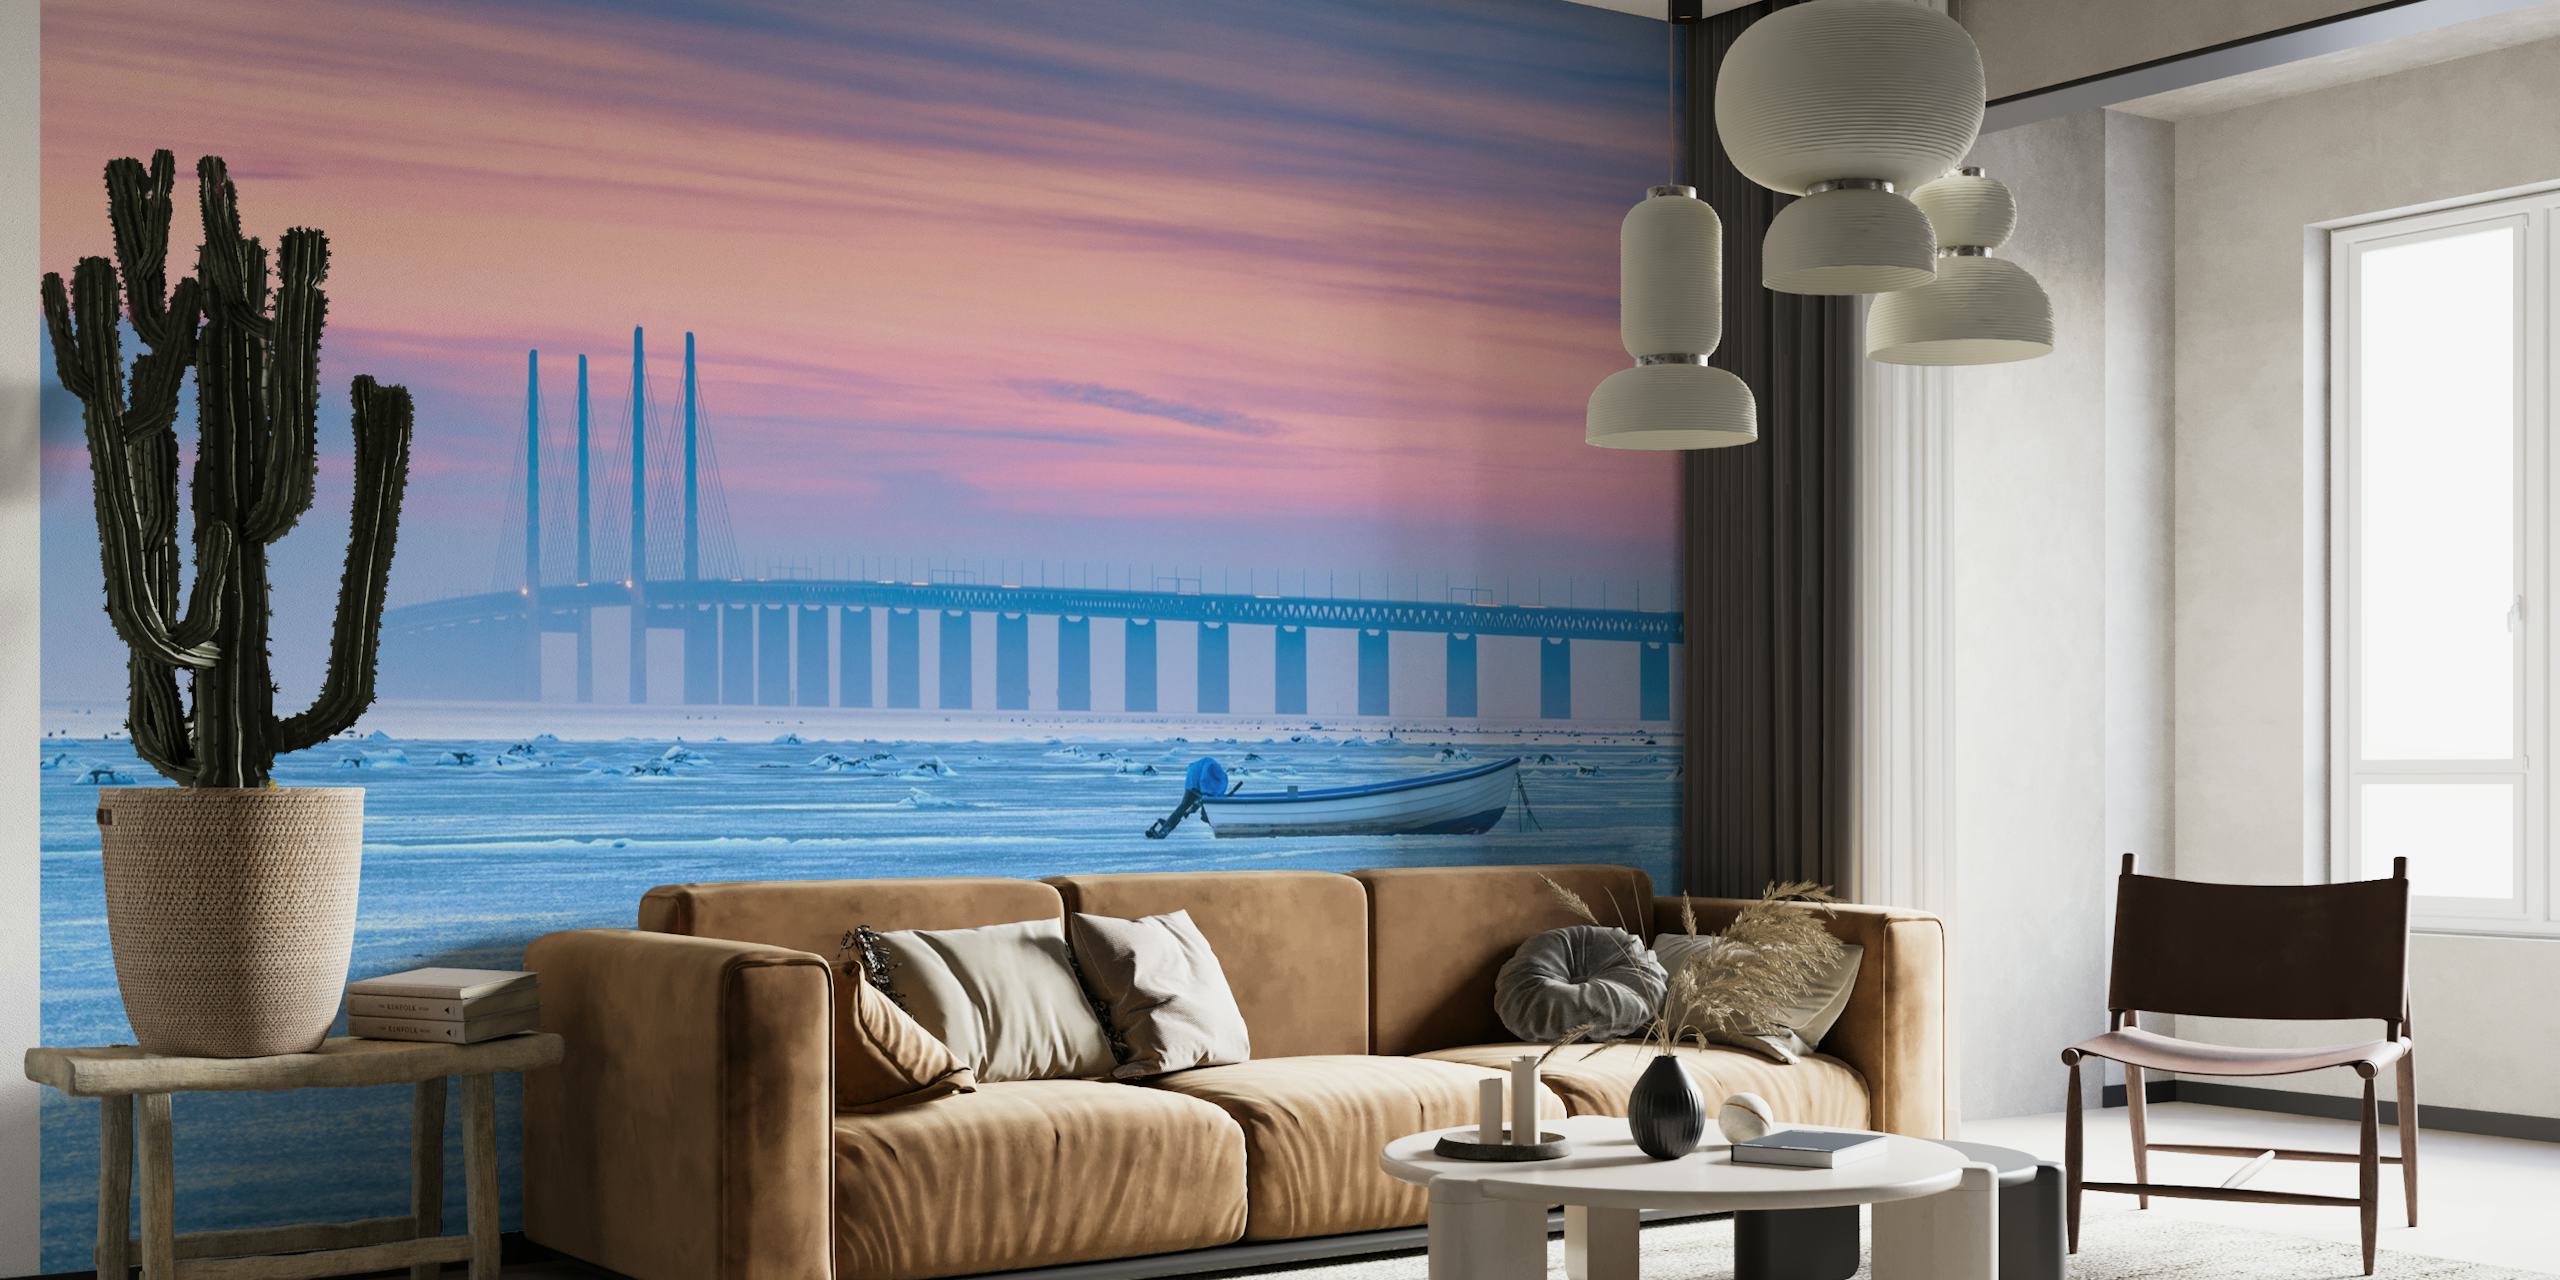 Un mural que representa un mar helado con un cielo tranquilo en colores pastel, un puente distante y un barco solitario.